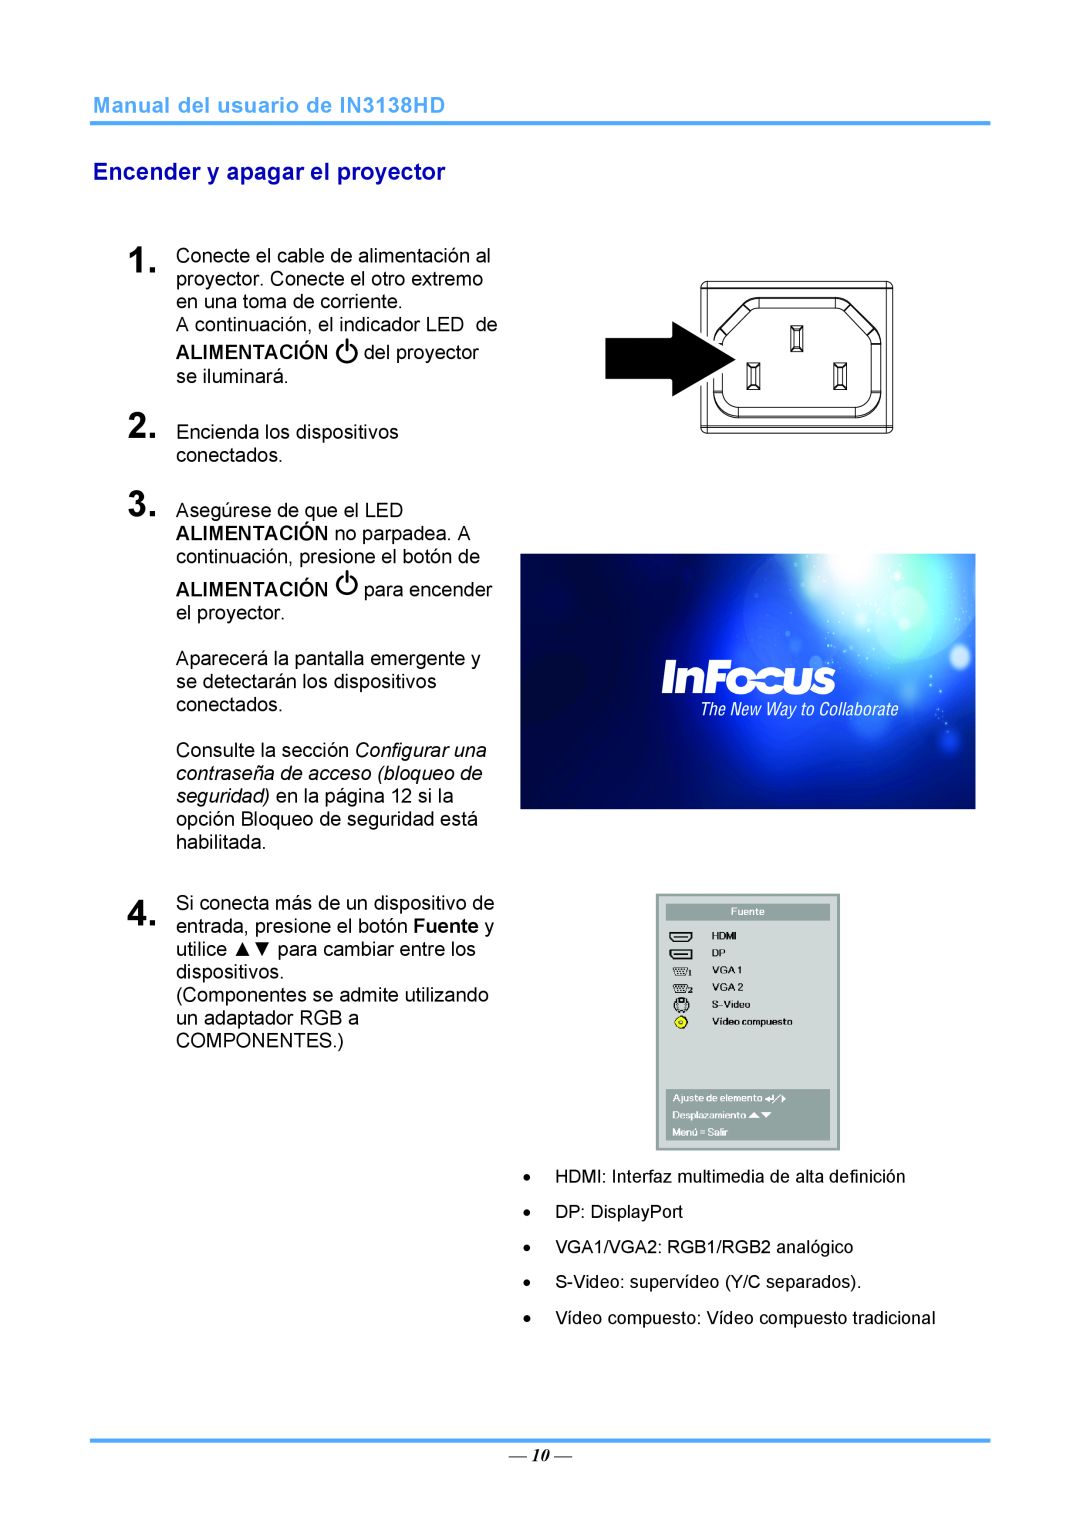 InFocus 3534324301 manual Encender y apagar el proyector, Manual del usuario de IN3138HD 